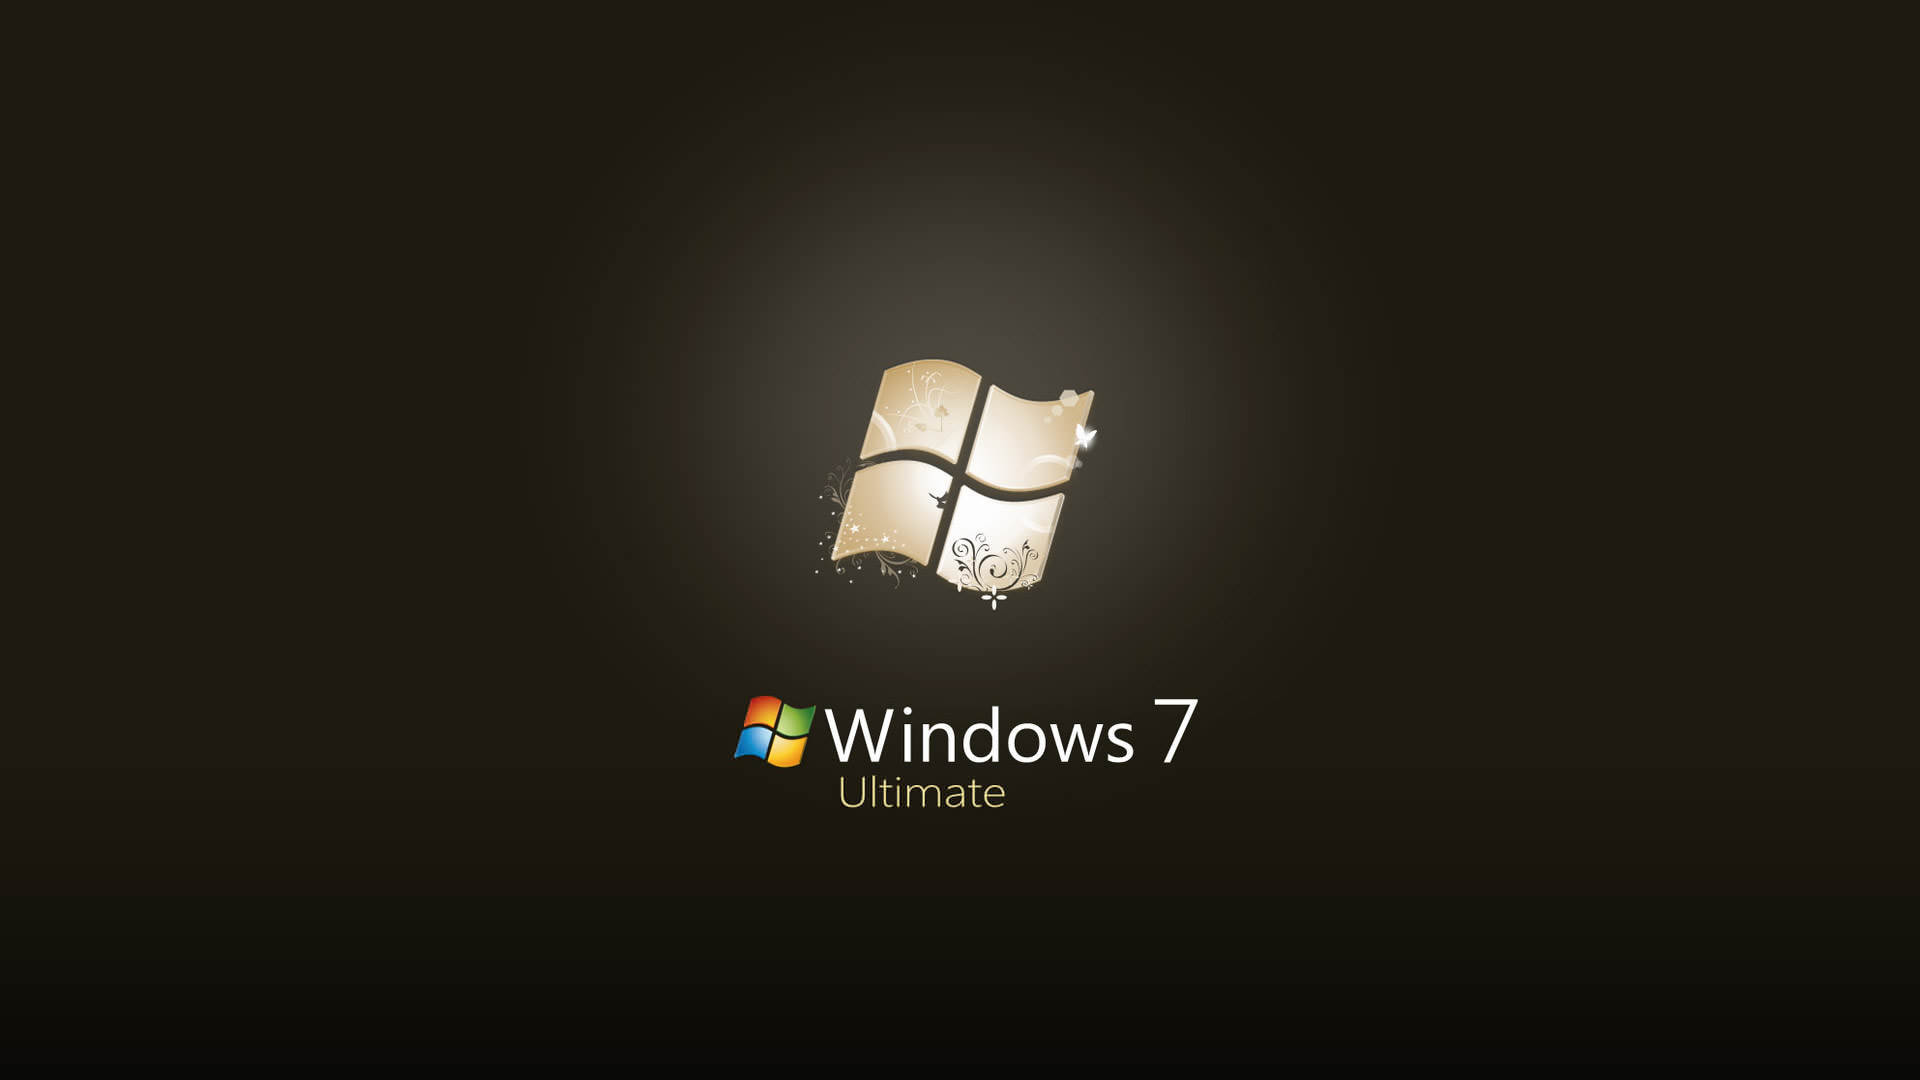 Windows 7 Ultimate Wallpaper 1920x1080 - WallpaperSafari